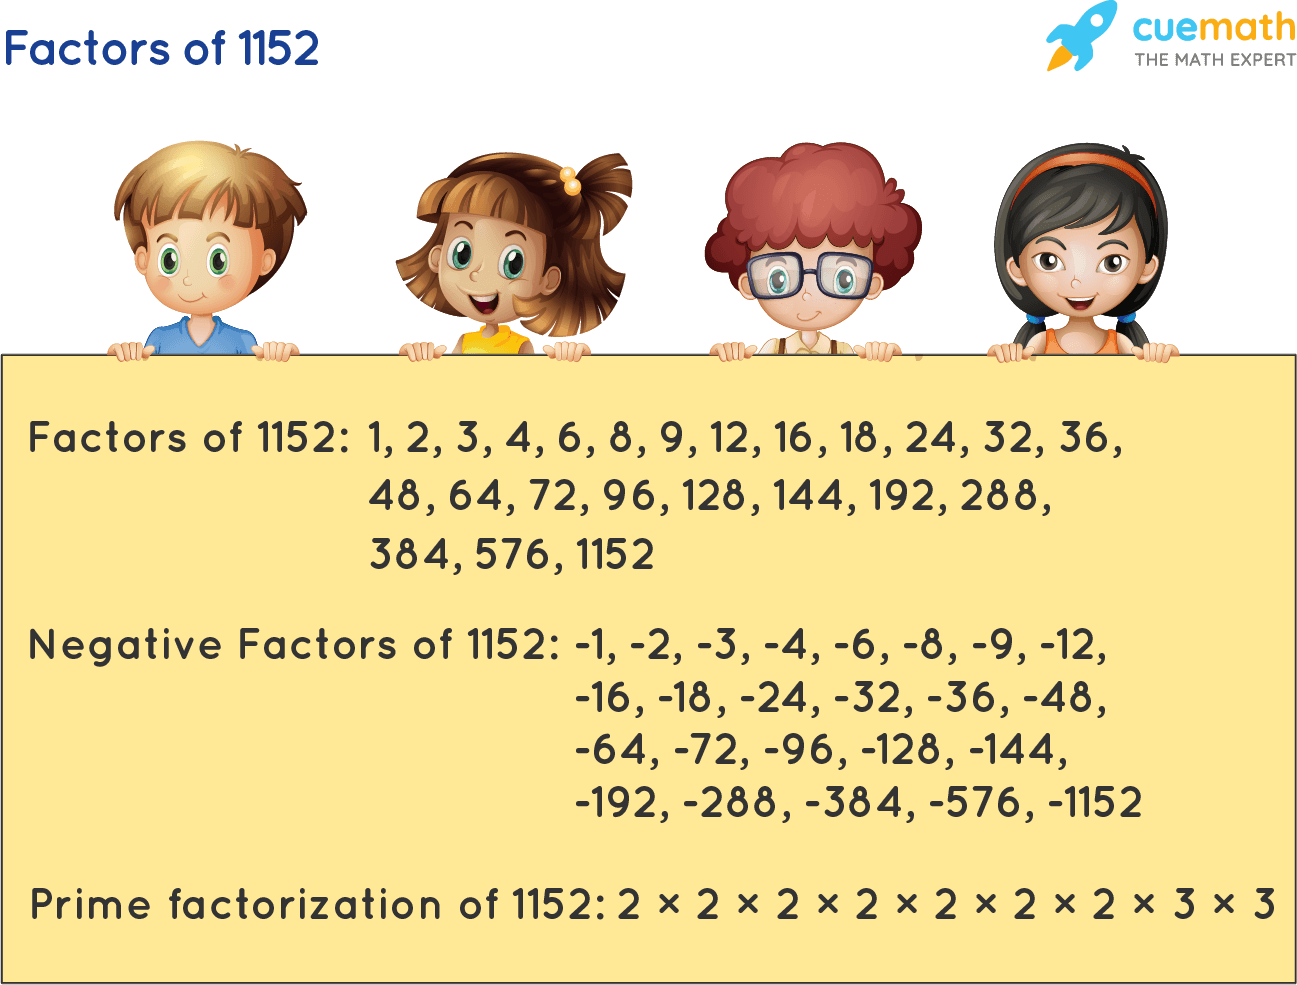 Factors of 1152